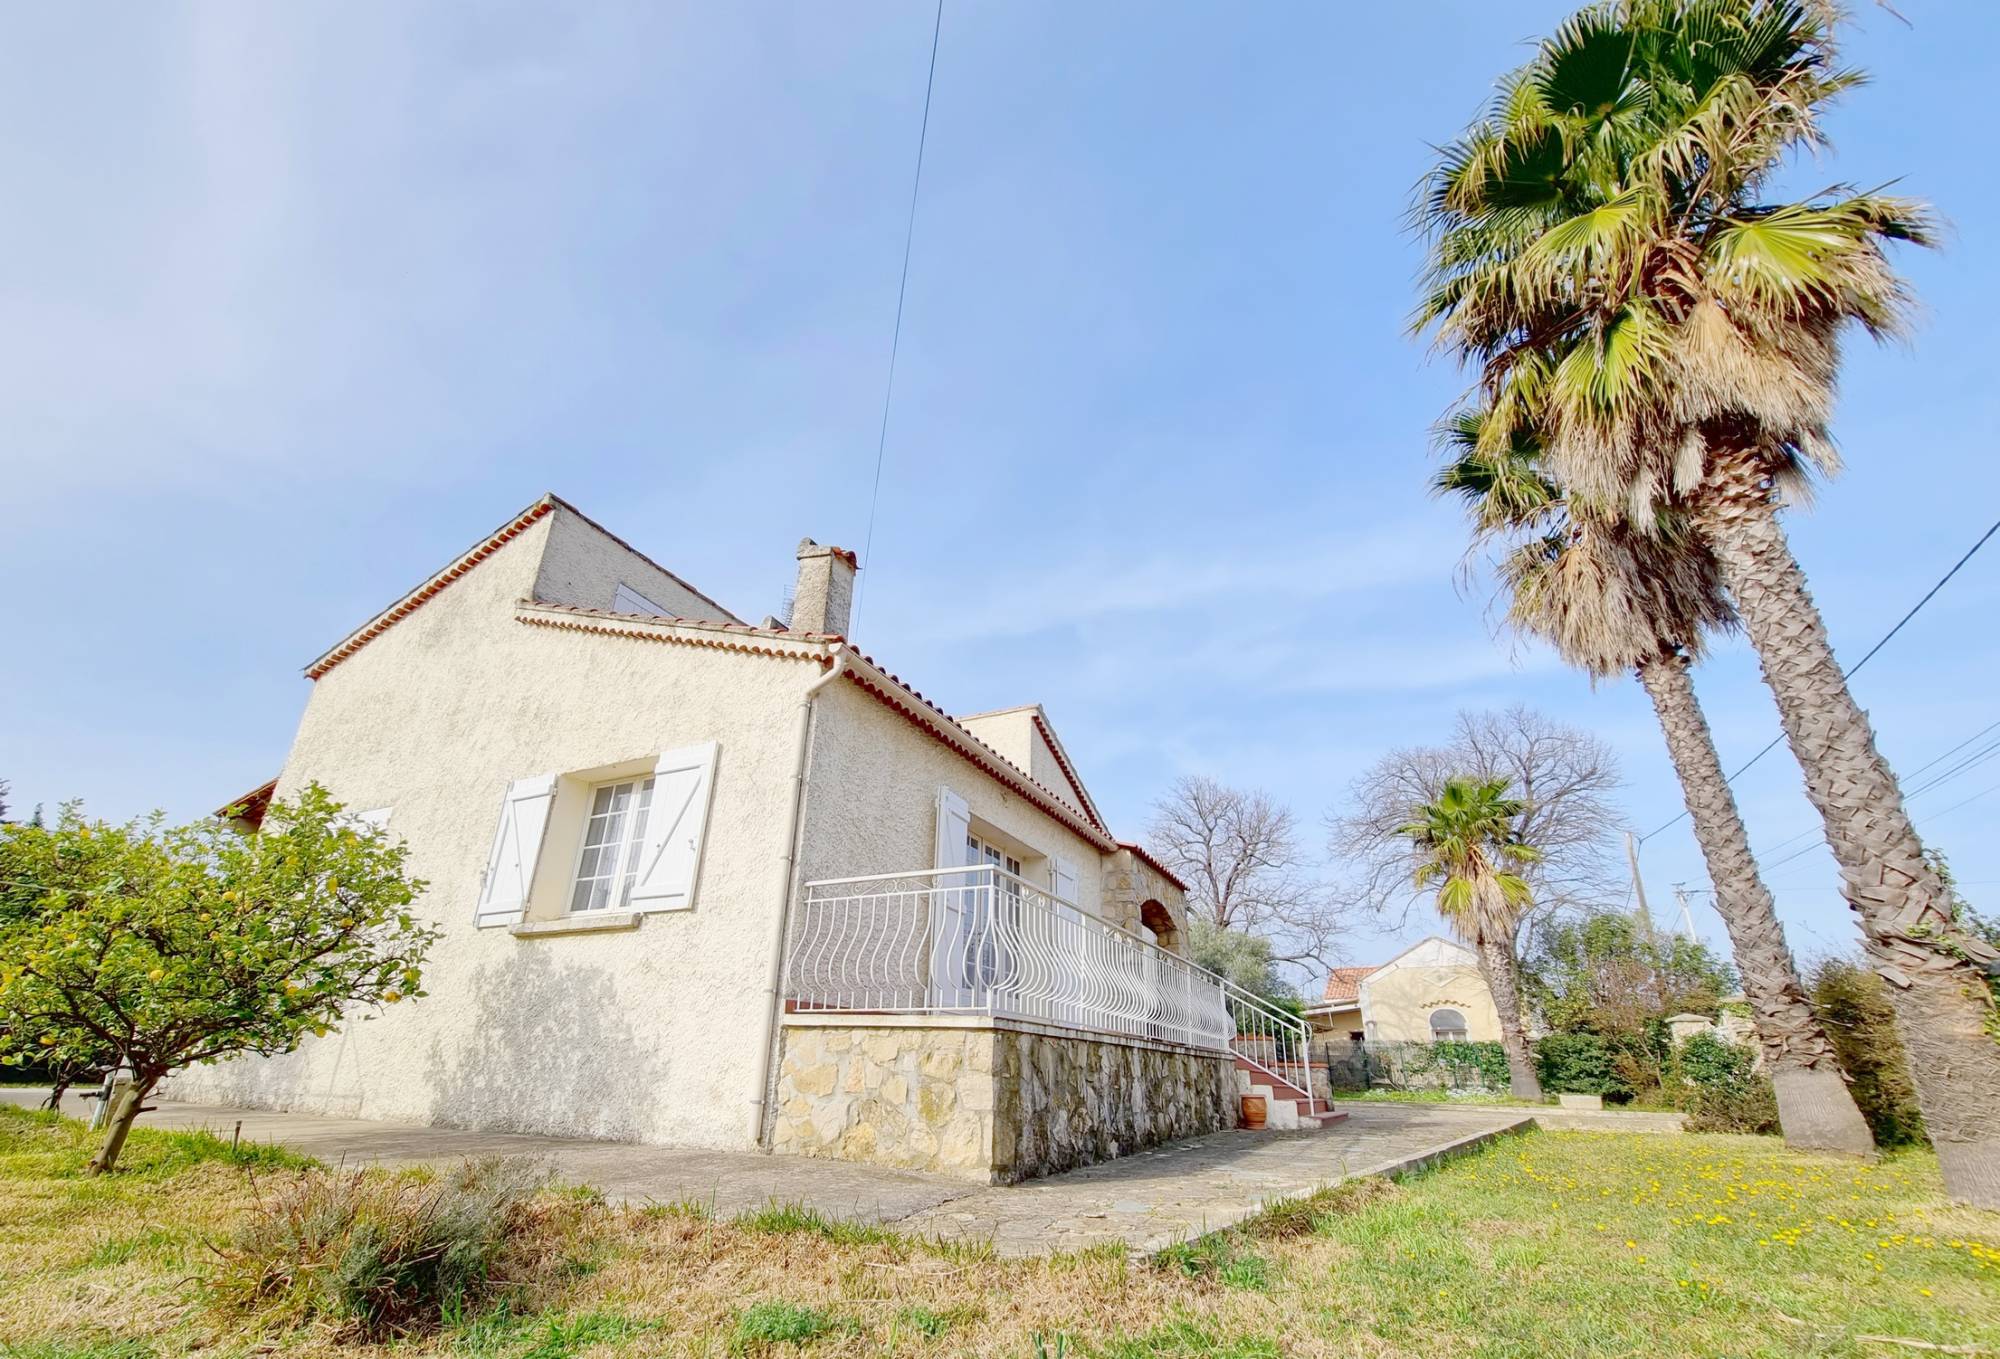 Maison familiale avec terrain à vendre quartier Fabregas à La Seyne